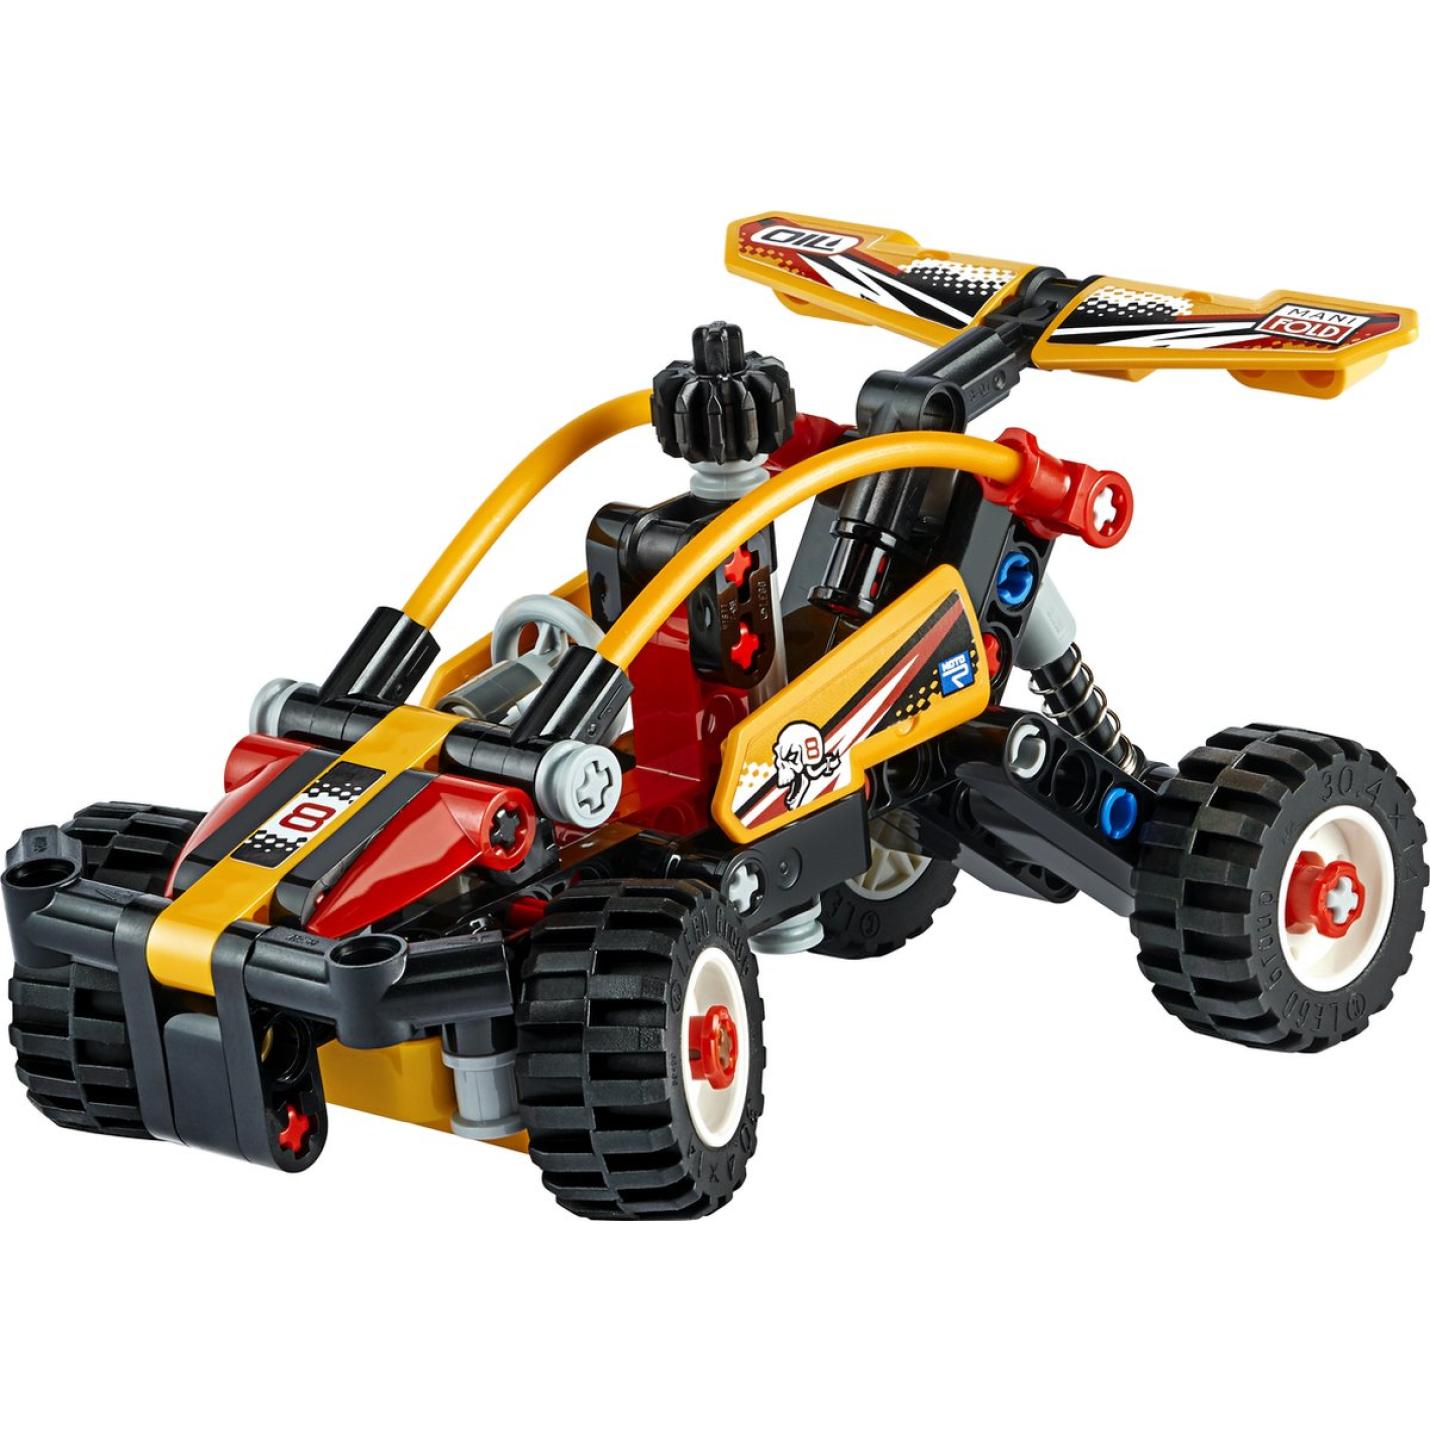 LEGO Technic Buggy - 42101 2